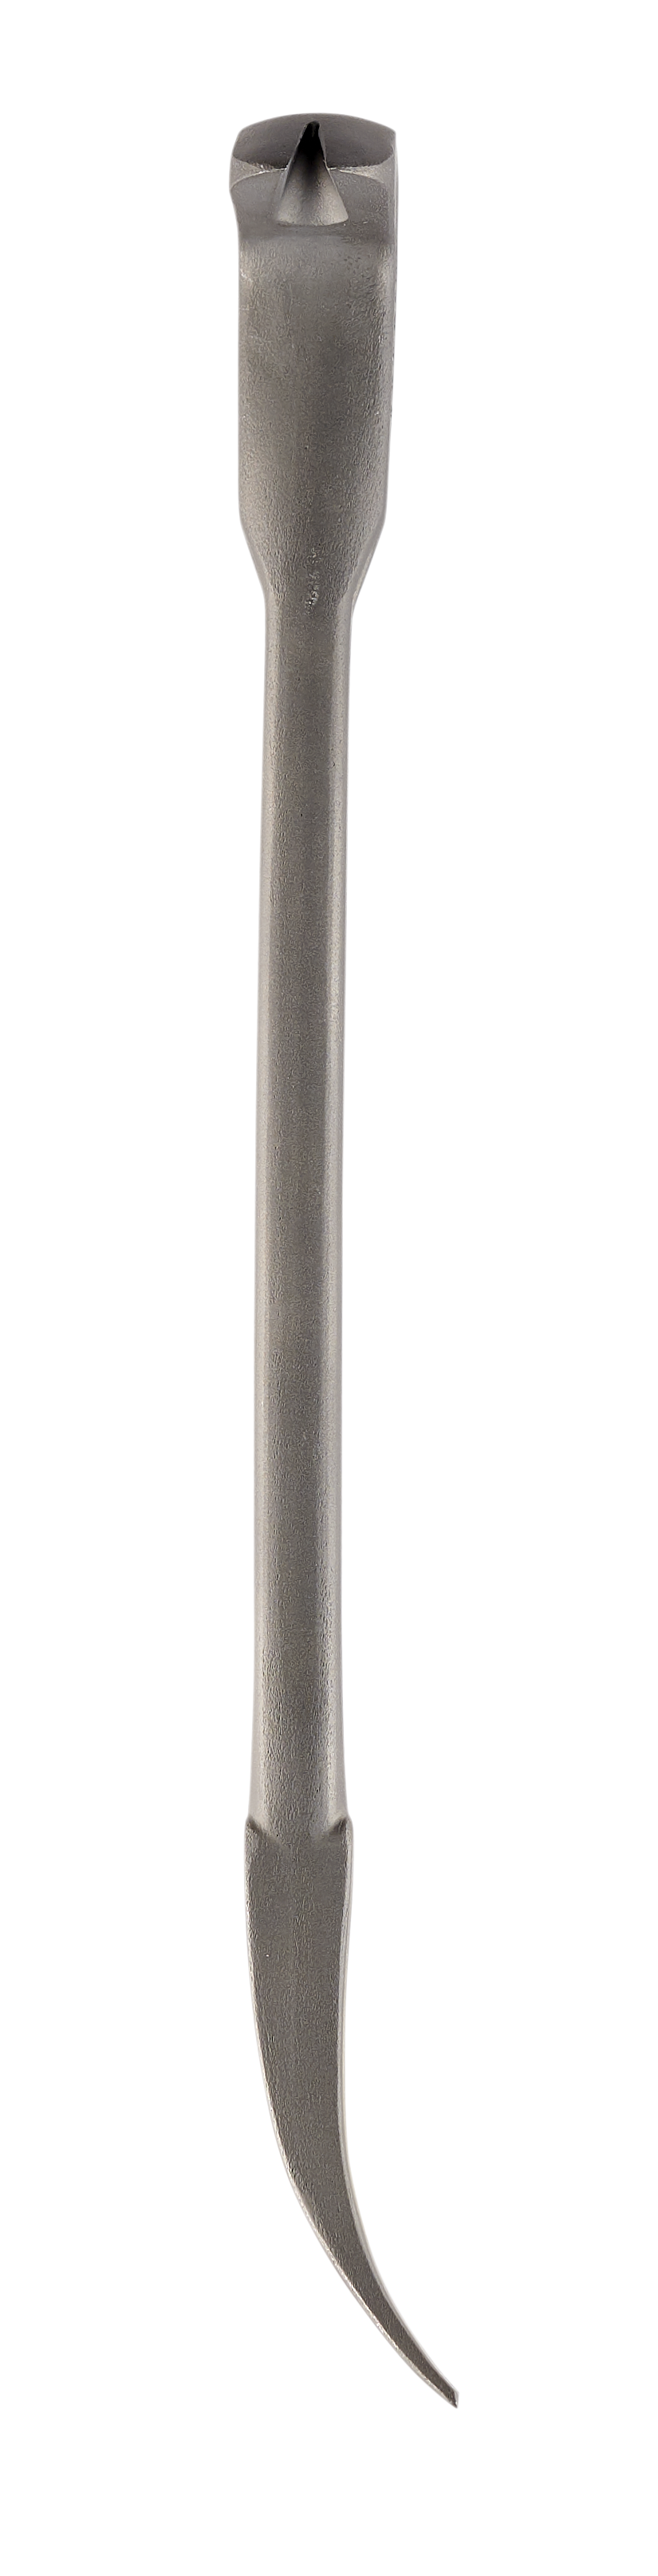 Stiletto TRIMBAR5 8.5 in. Titanium Trim Bar Finish and Trim Puller